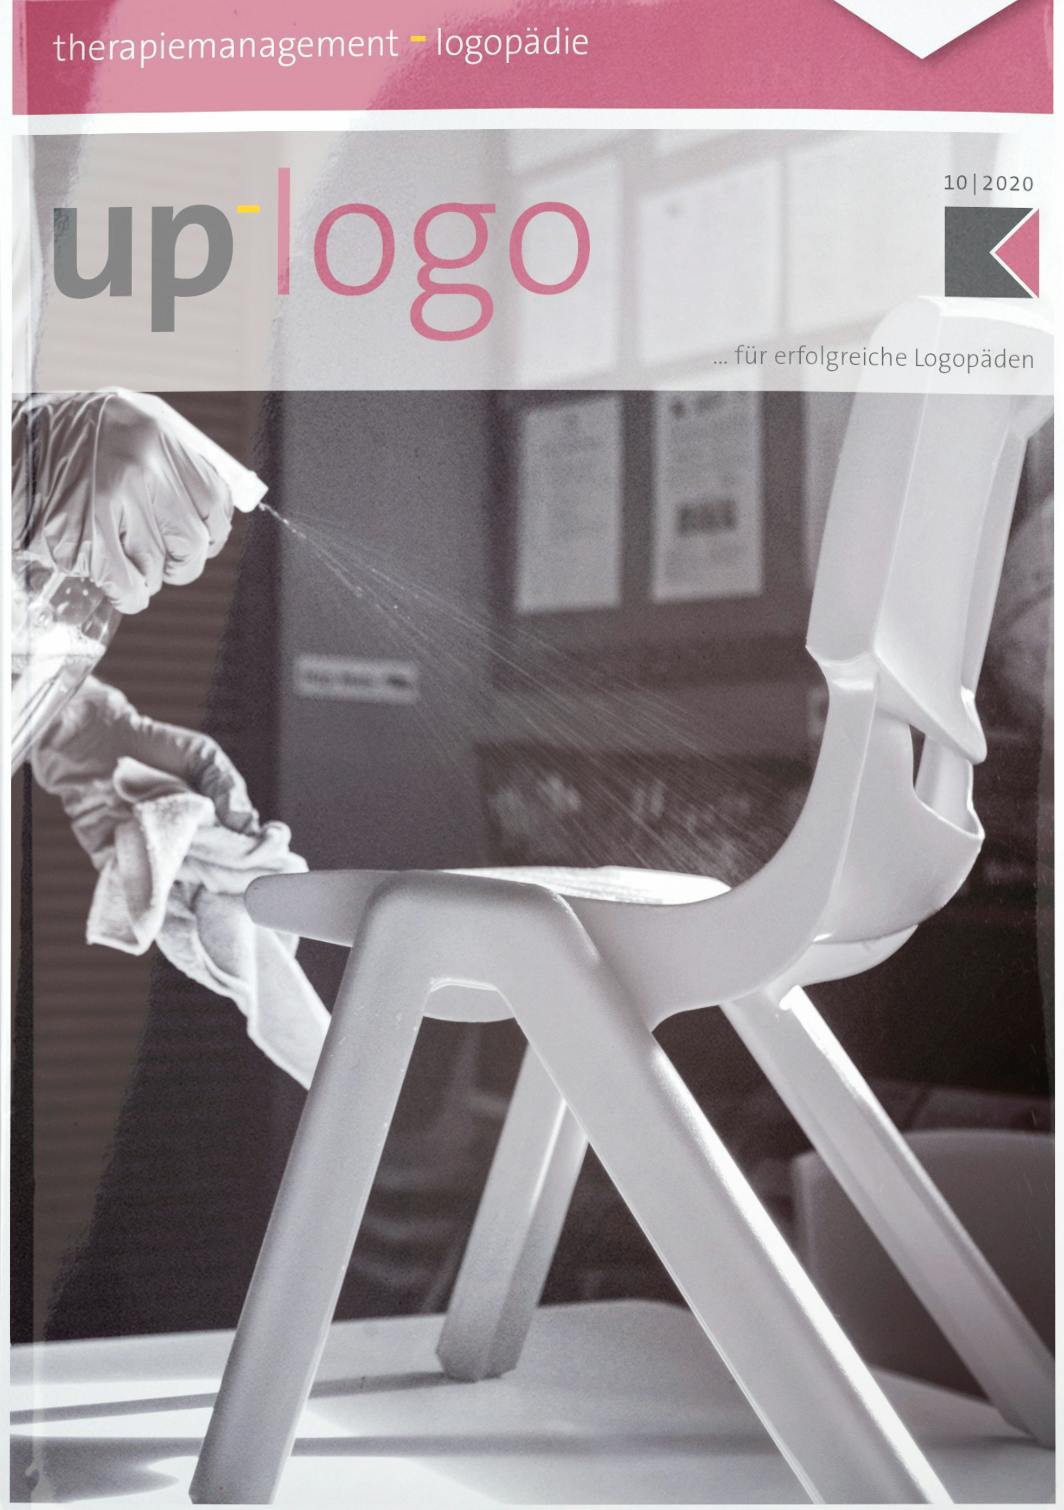 up_logo 10/2020